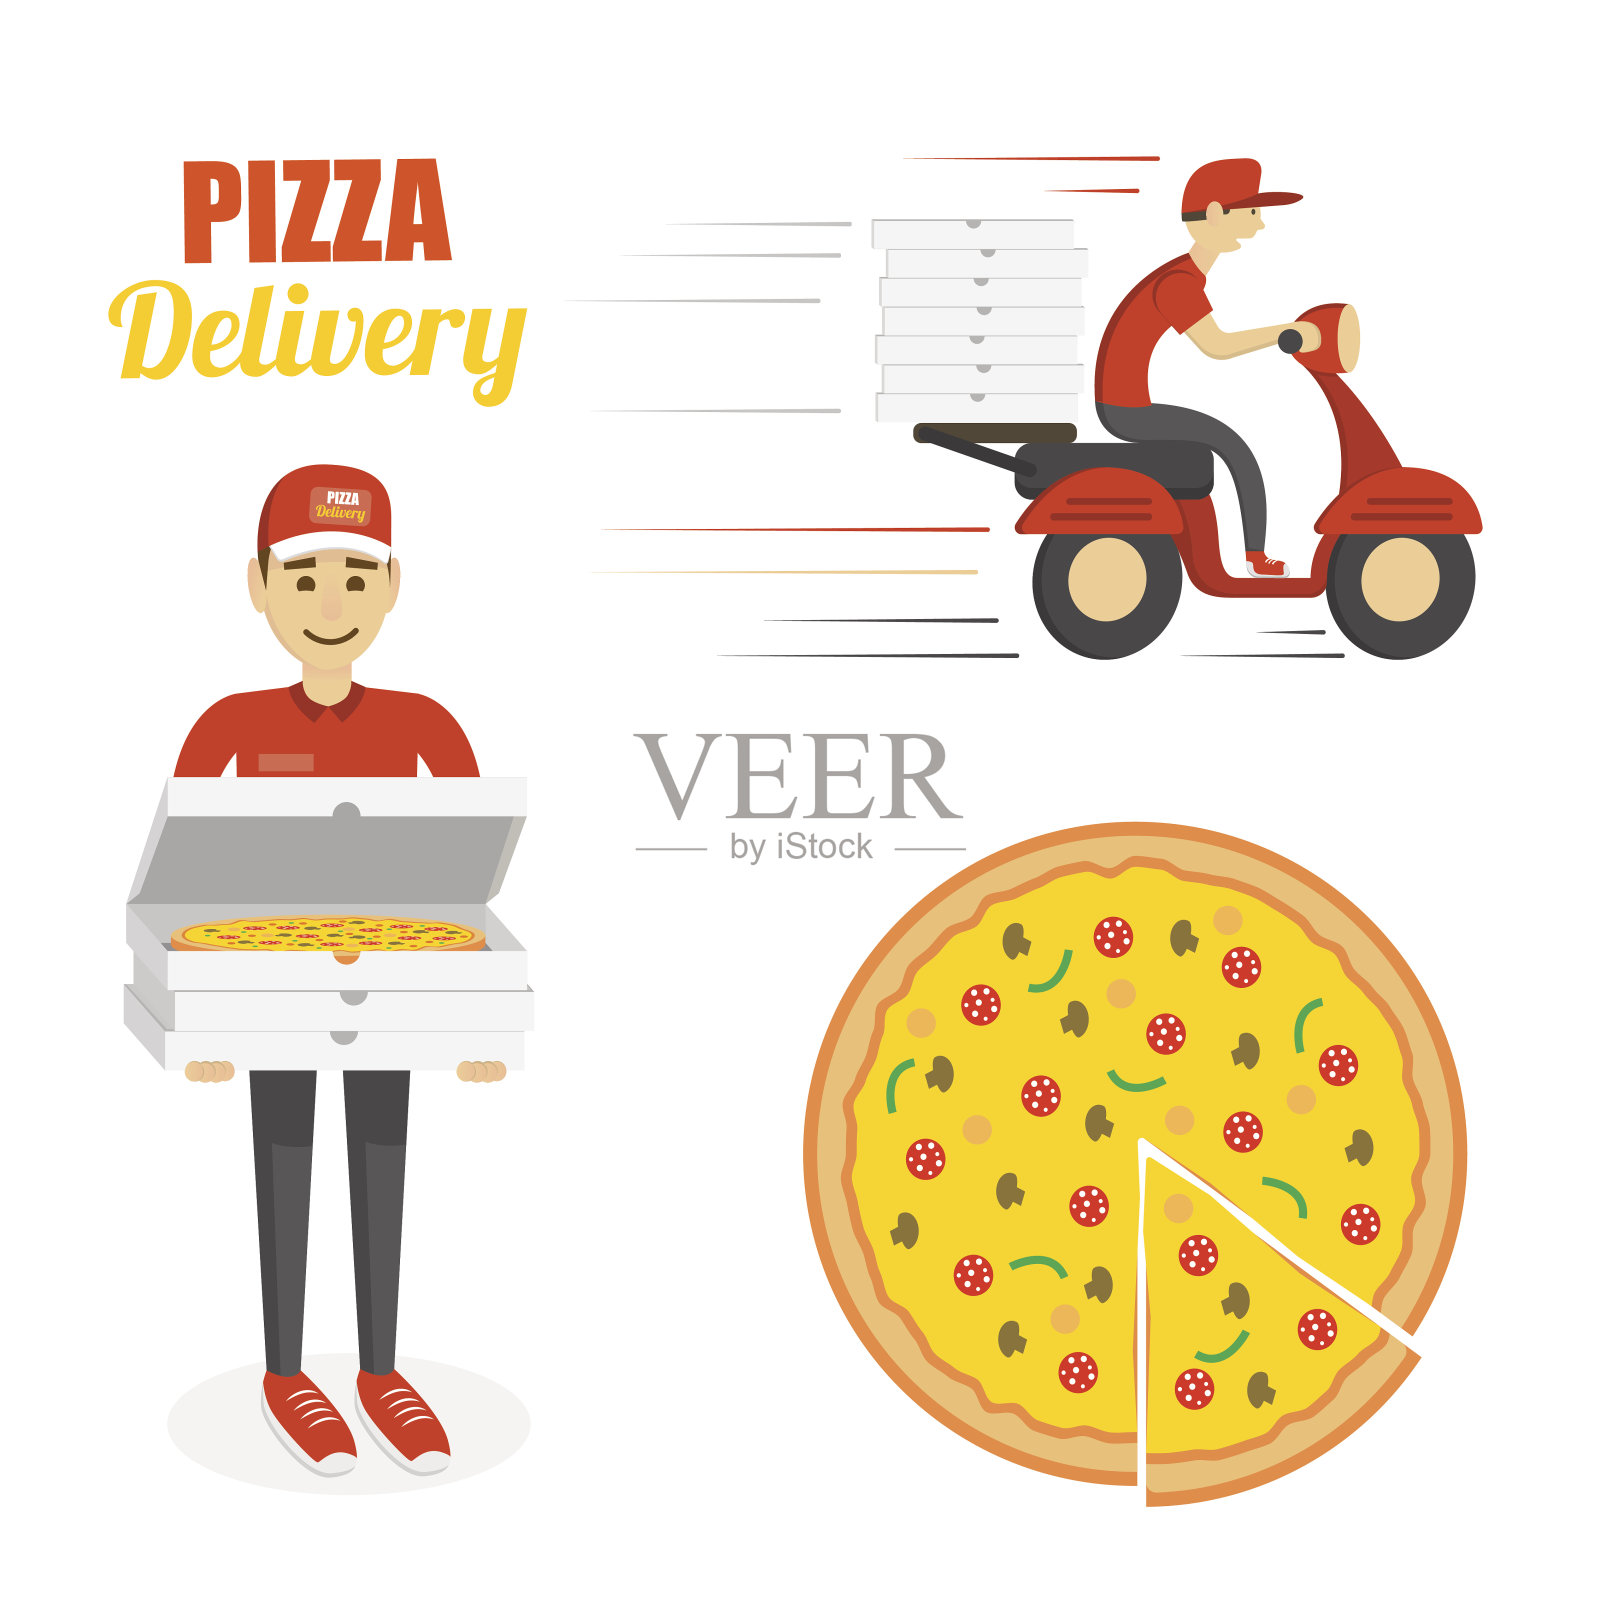 披萨，摩托车和送货员。快速交付的概念插画图片素材